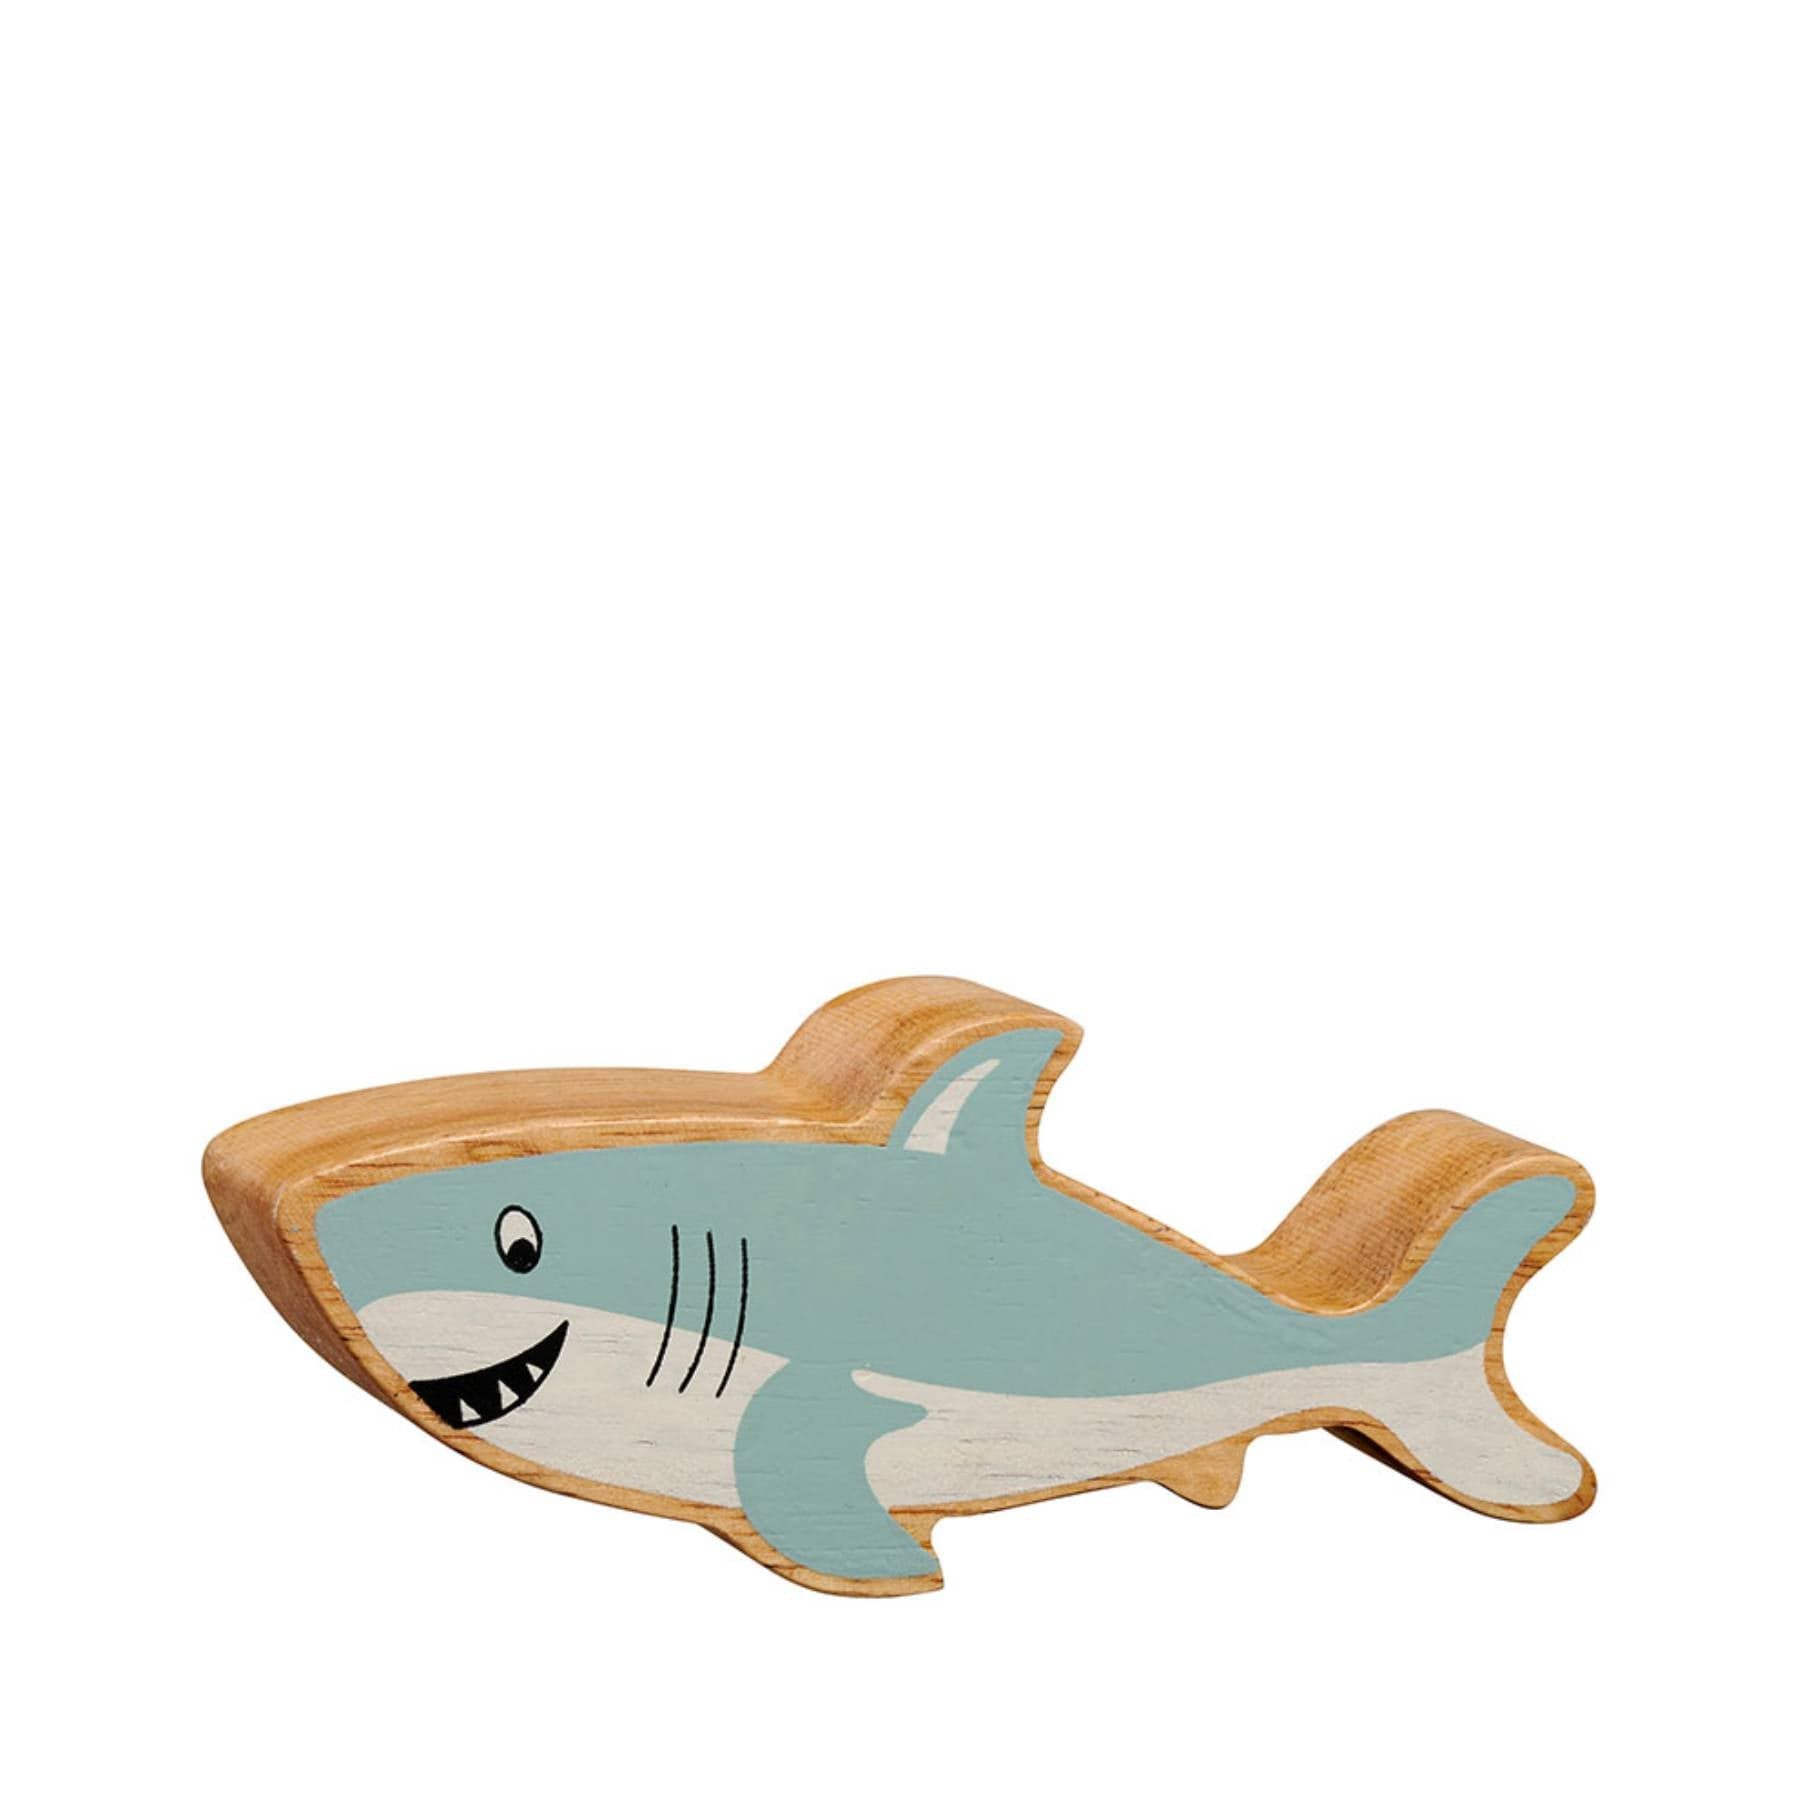 Wooden shark figure